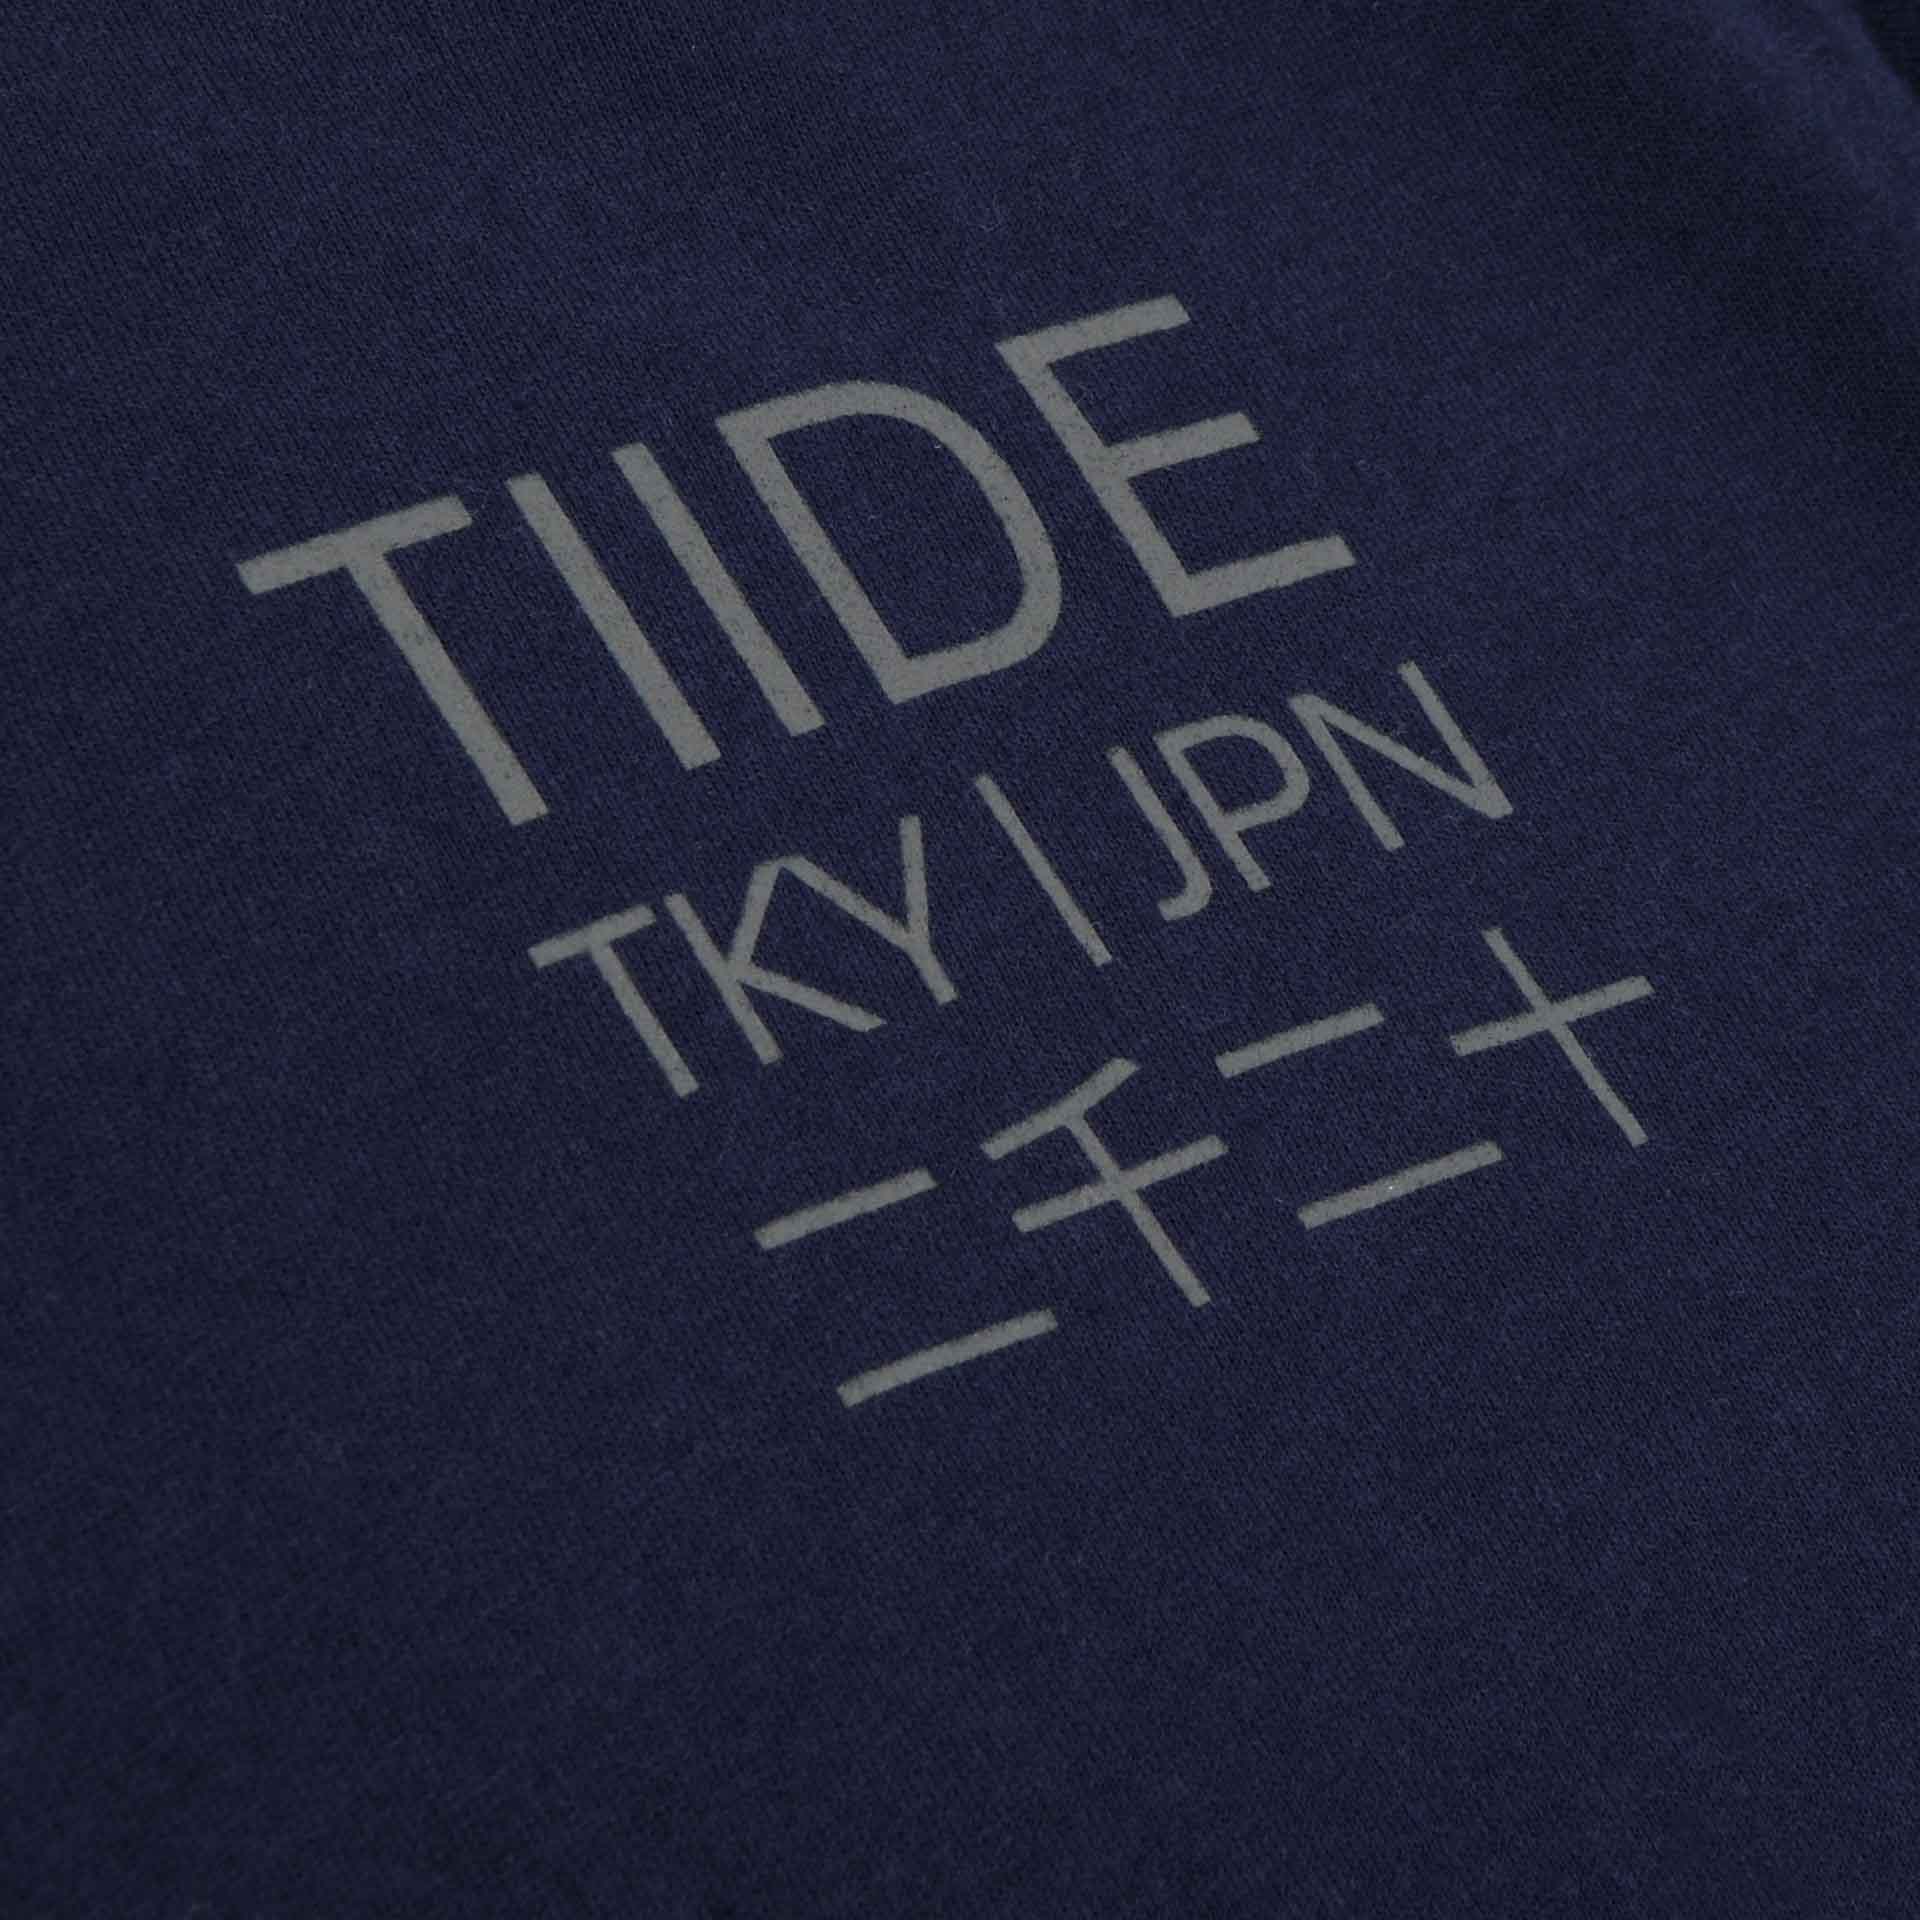 Tiide Tokyo 2020 T-Shirt Navy